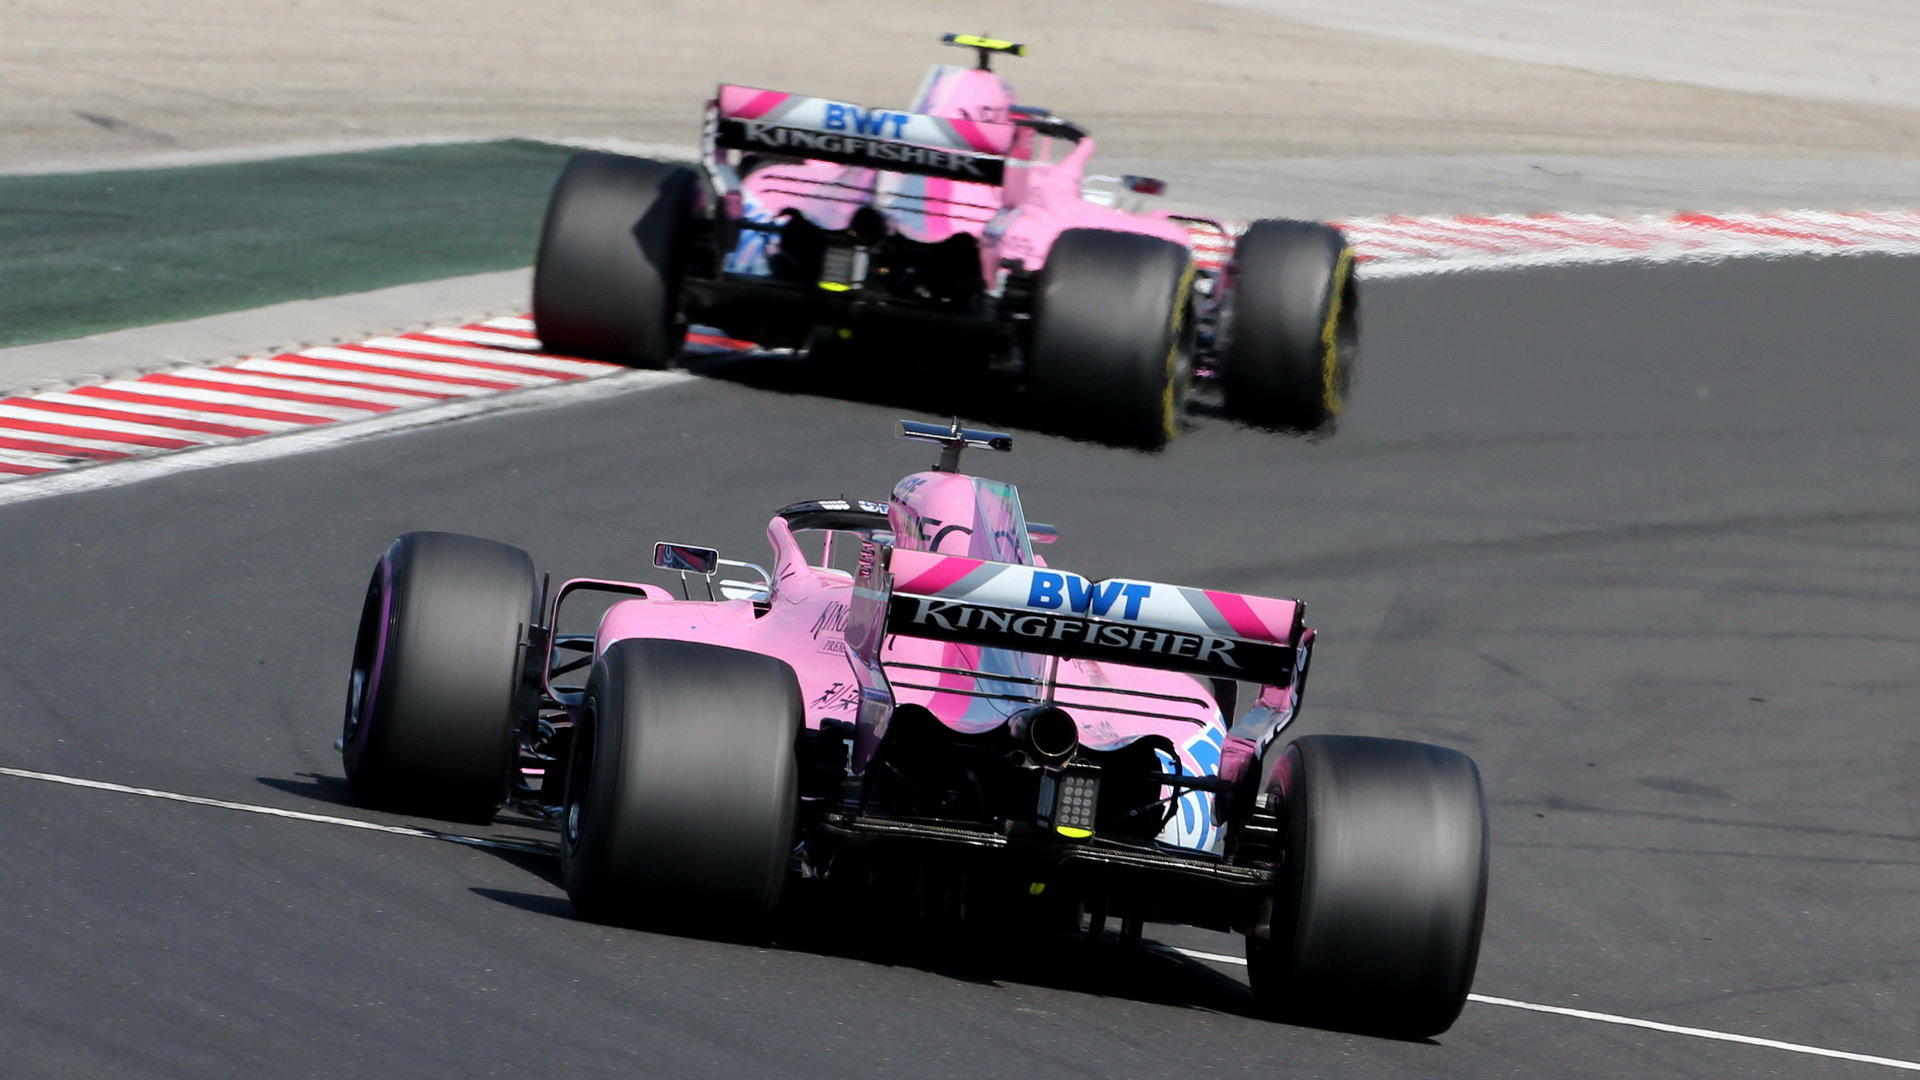 Oba vozy stáje Force India během posledního závodu v Maďarsku